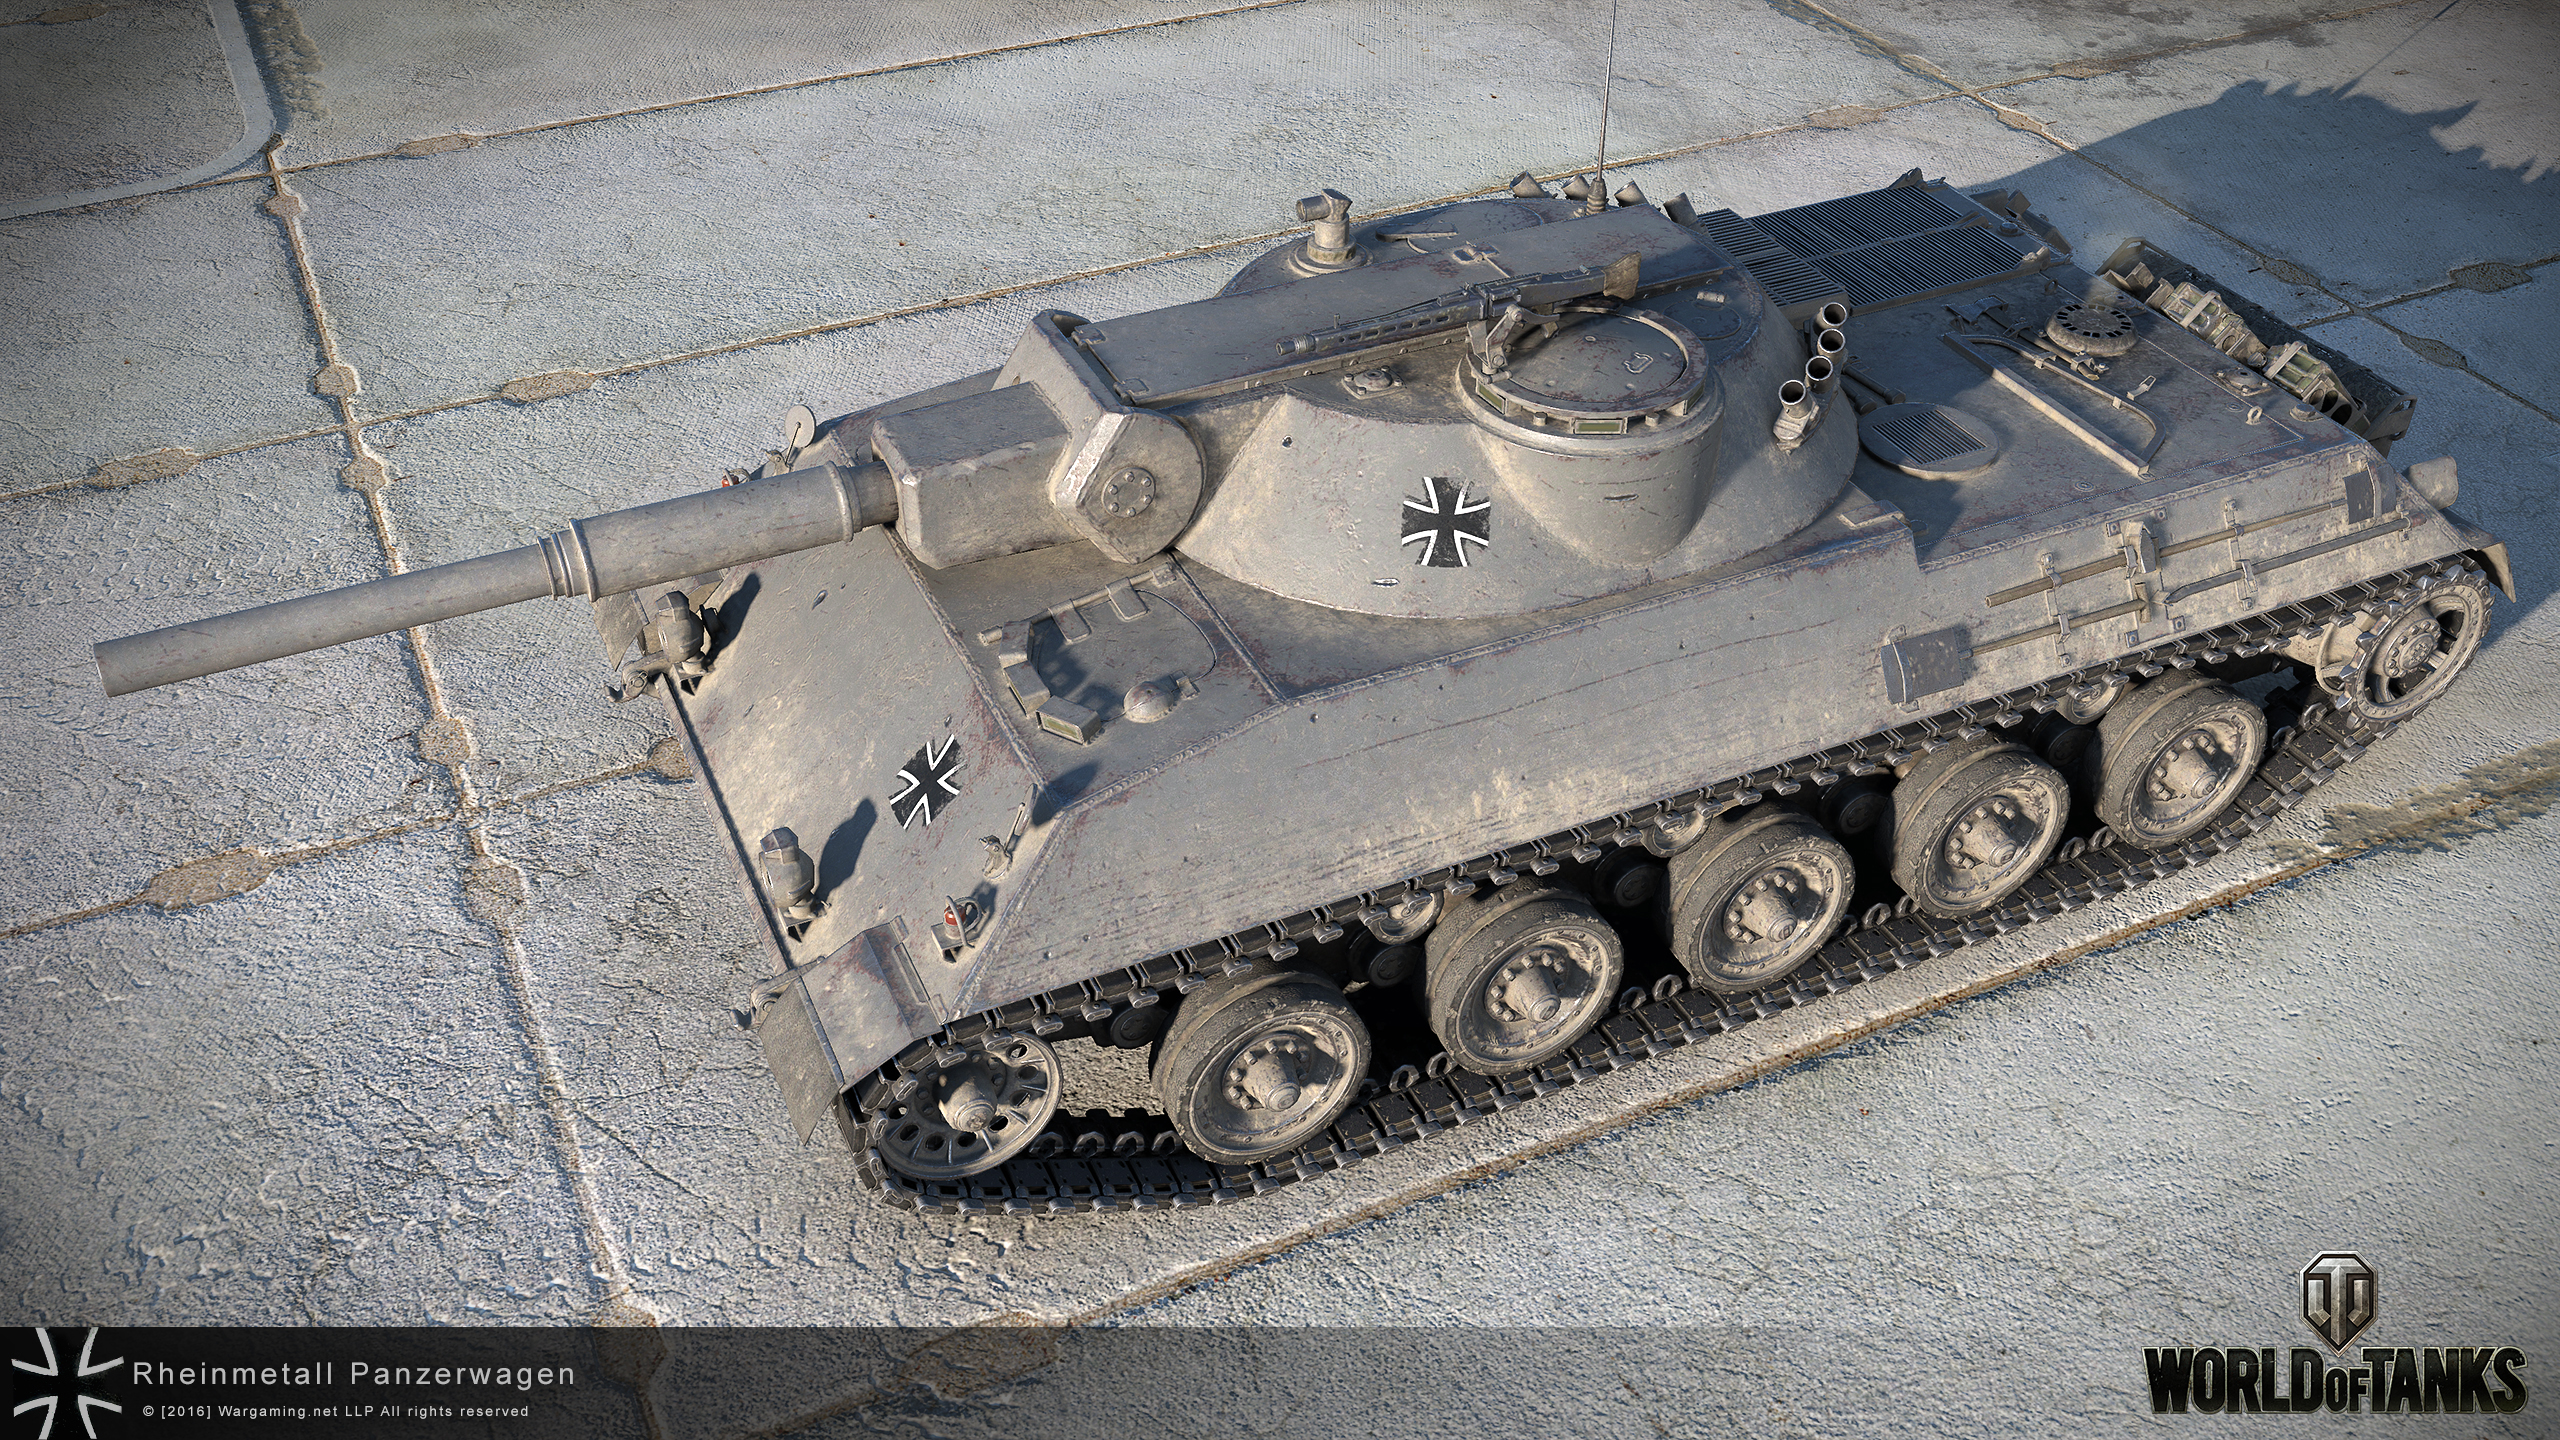 Picket Utallige Midler Light Tanks Revision: Germany | General News | World of Tanks